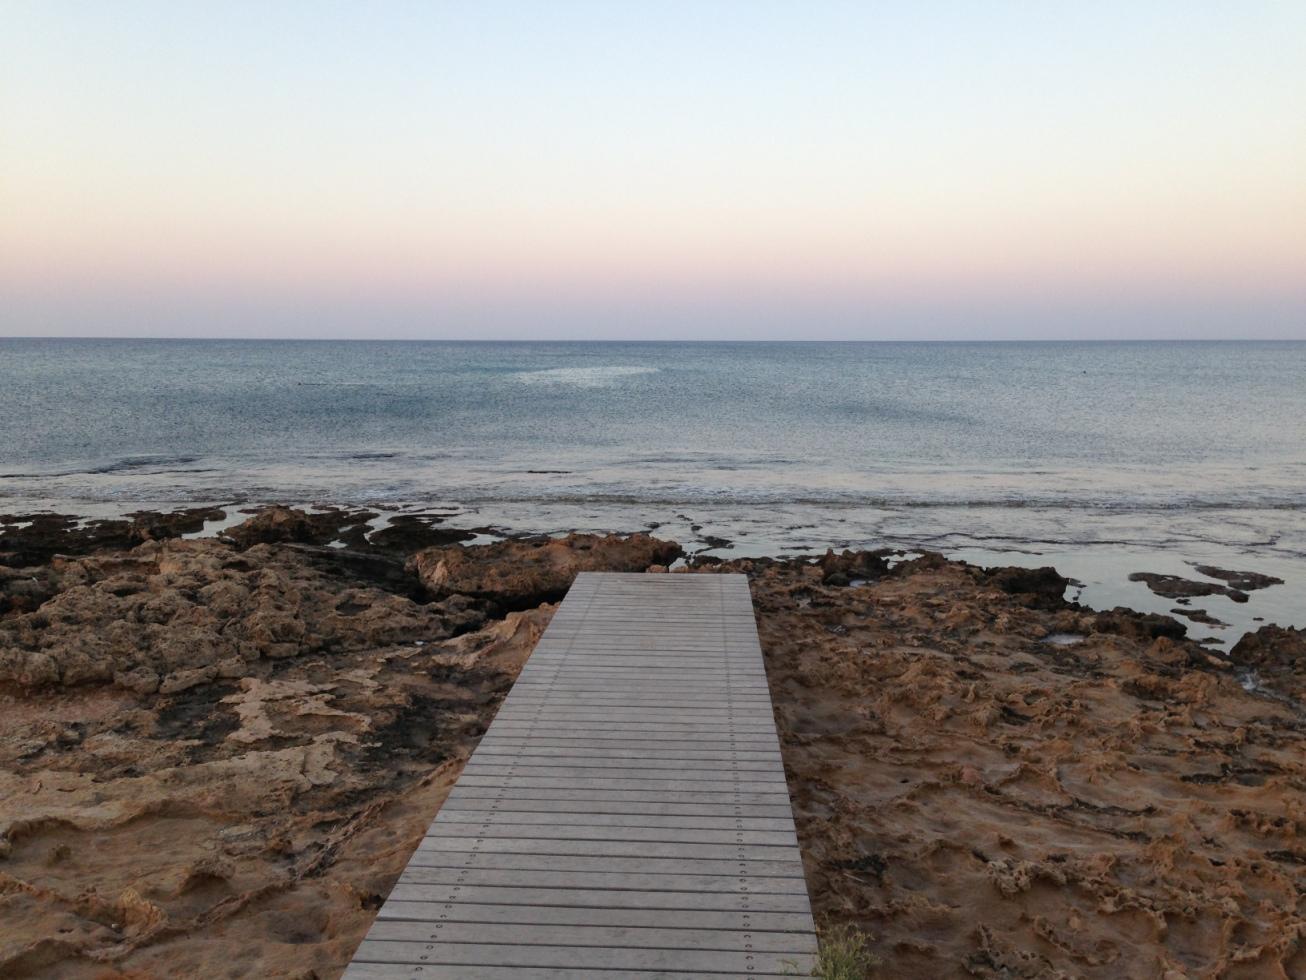 Christoffer skickade in denna bild på bryggan nära sin hotellkoja på Cypern.